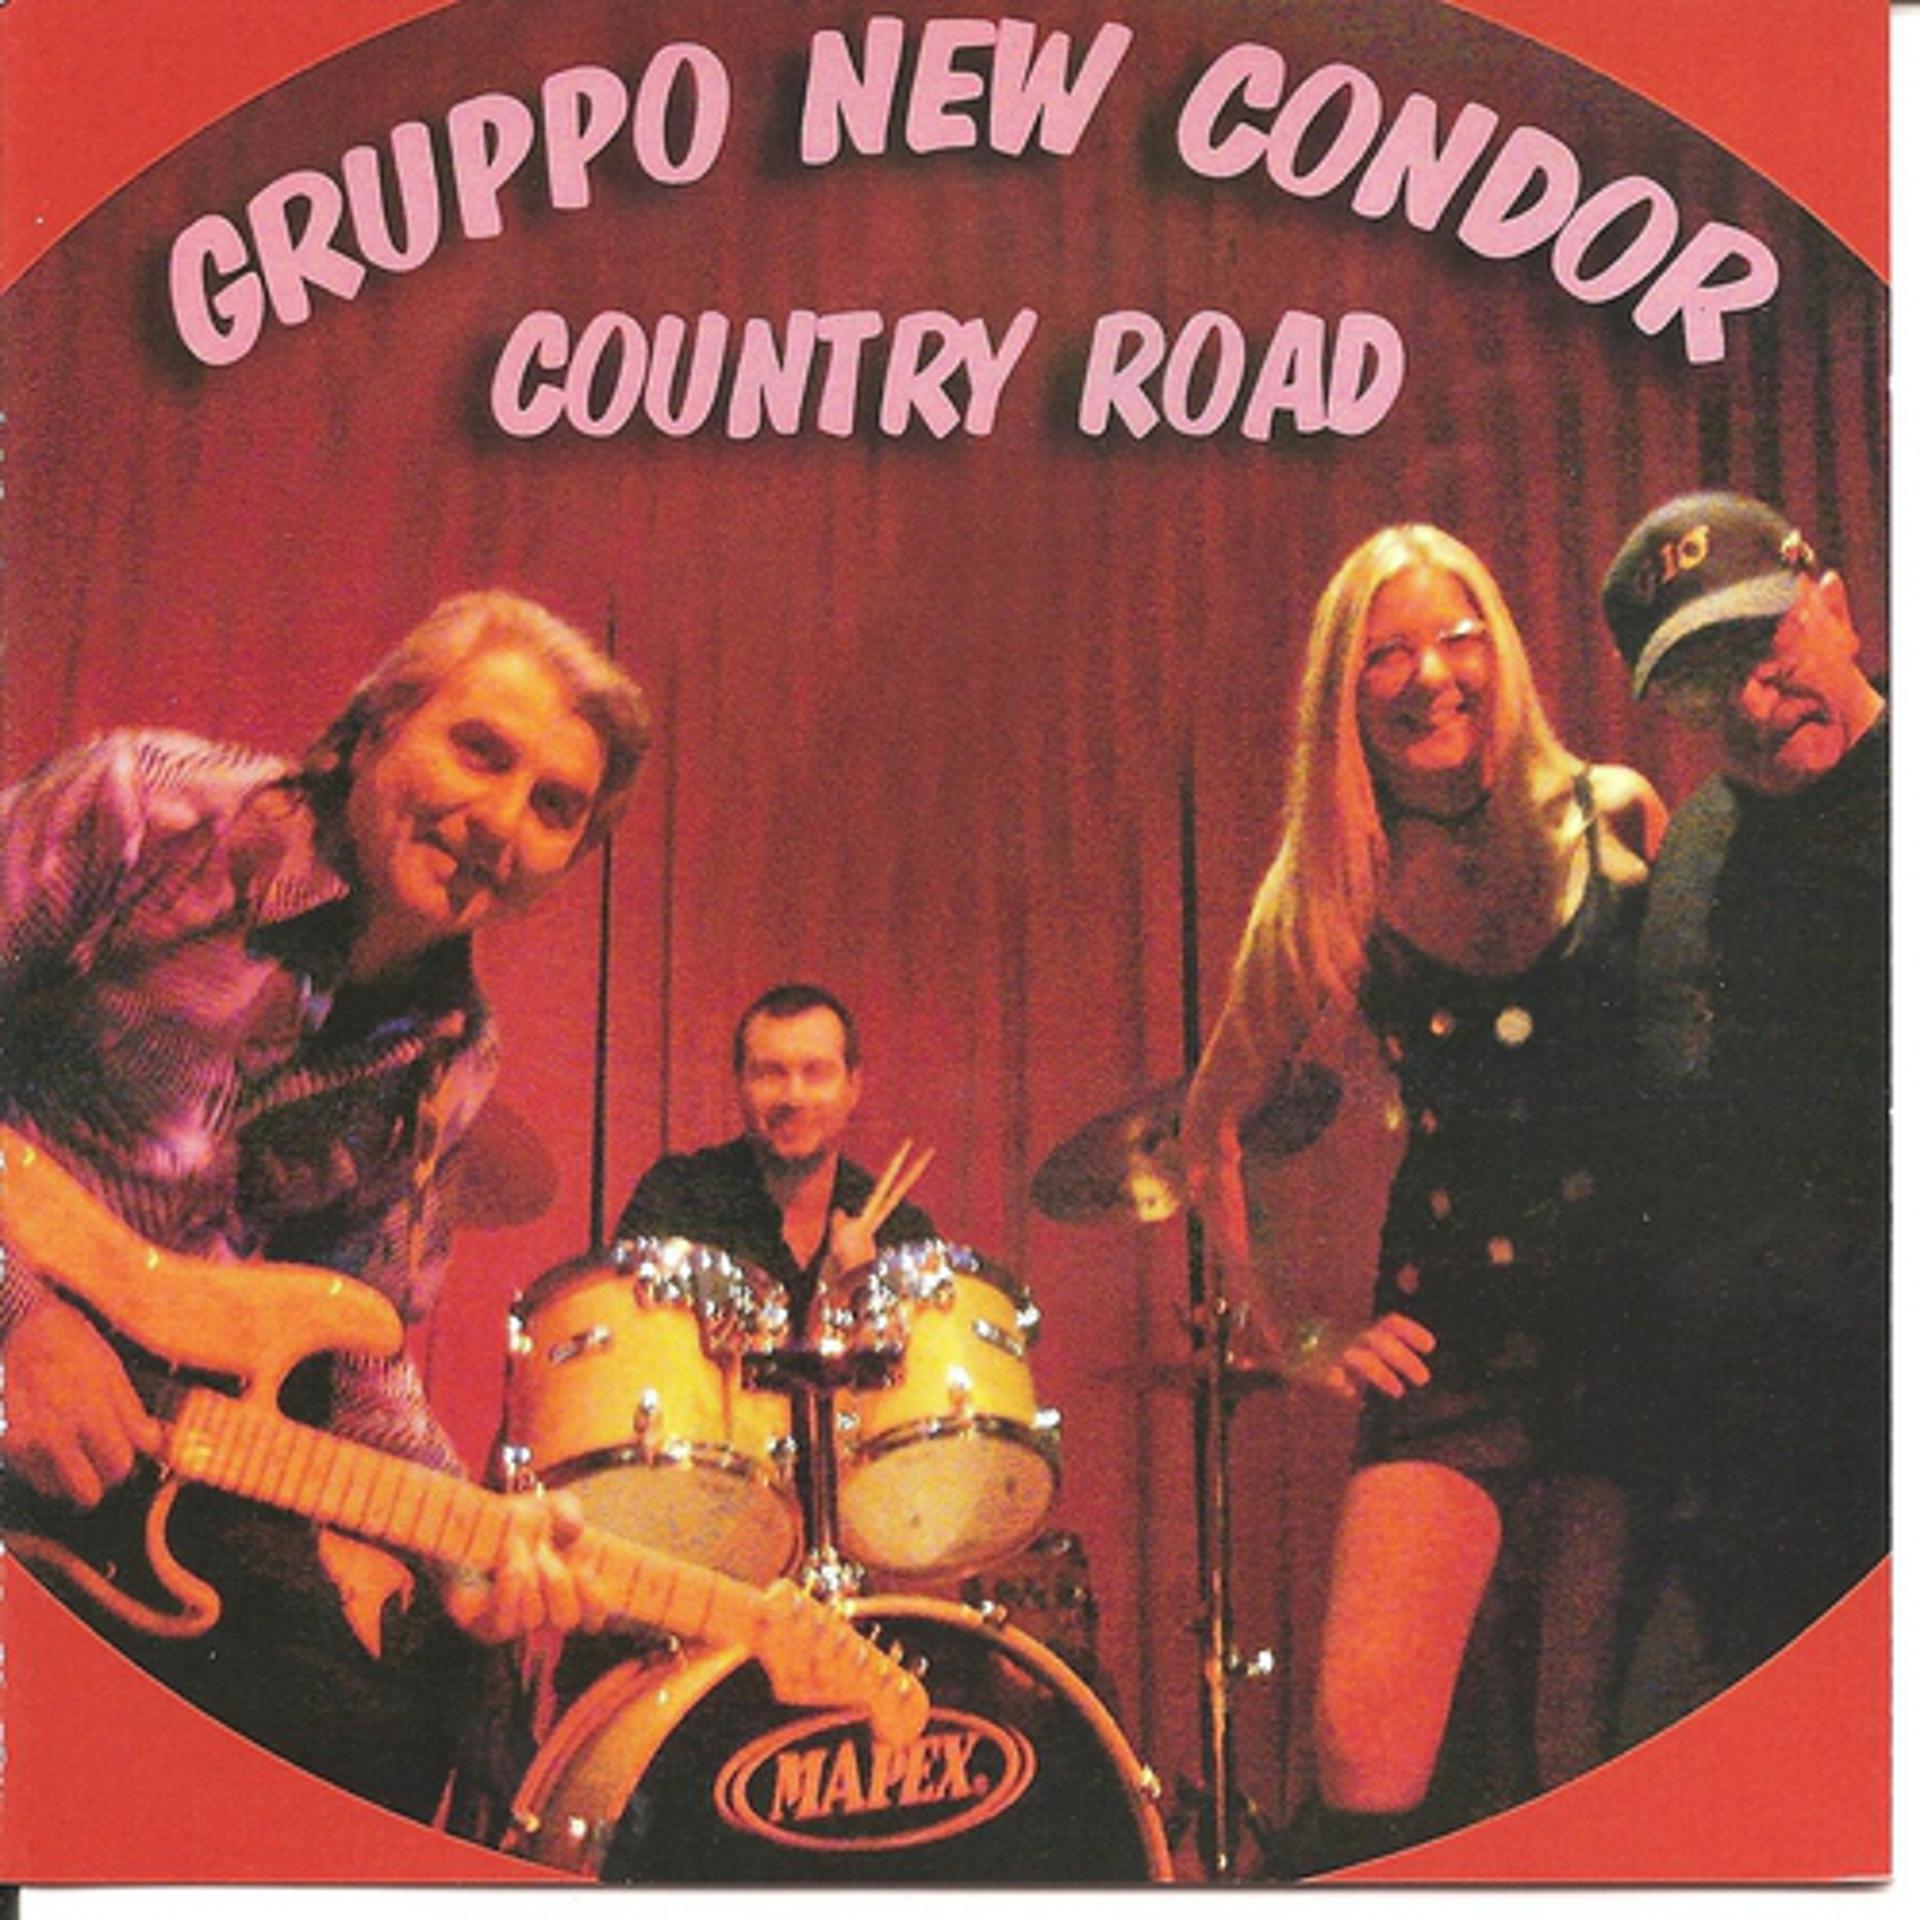 Постер к треку Cicci Guitar Condor, Gruppo New Condor - Sailing